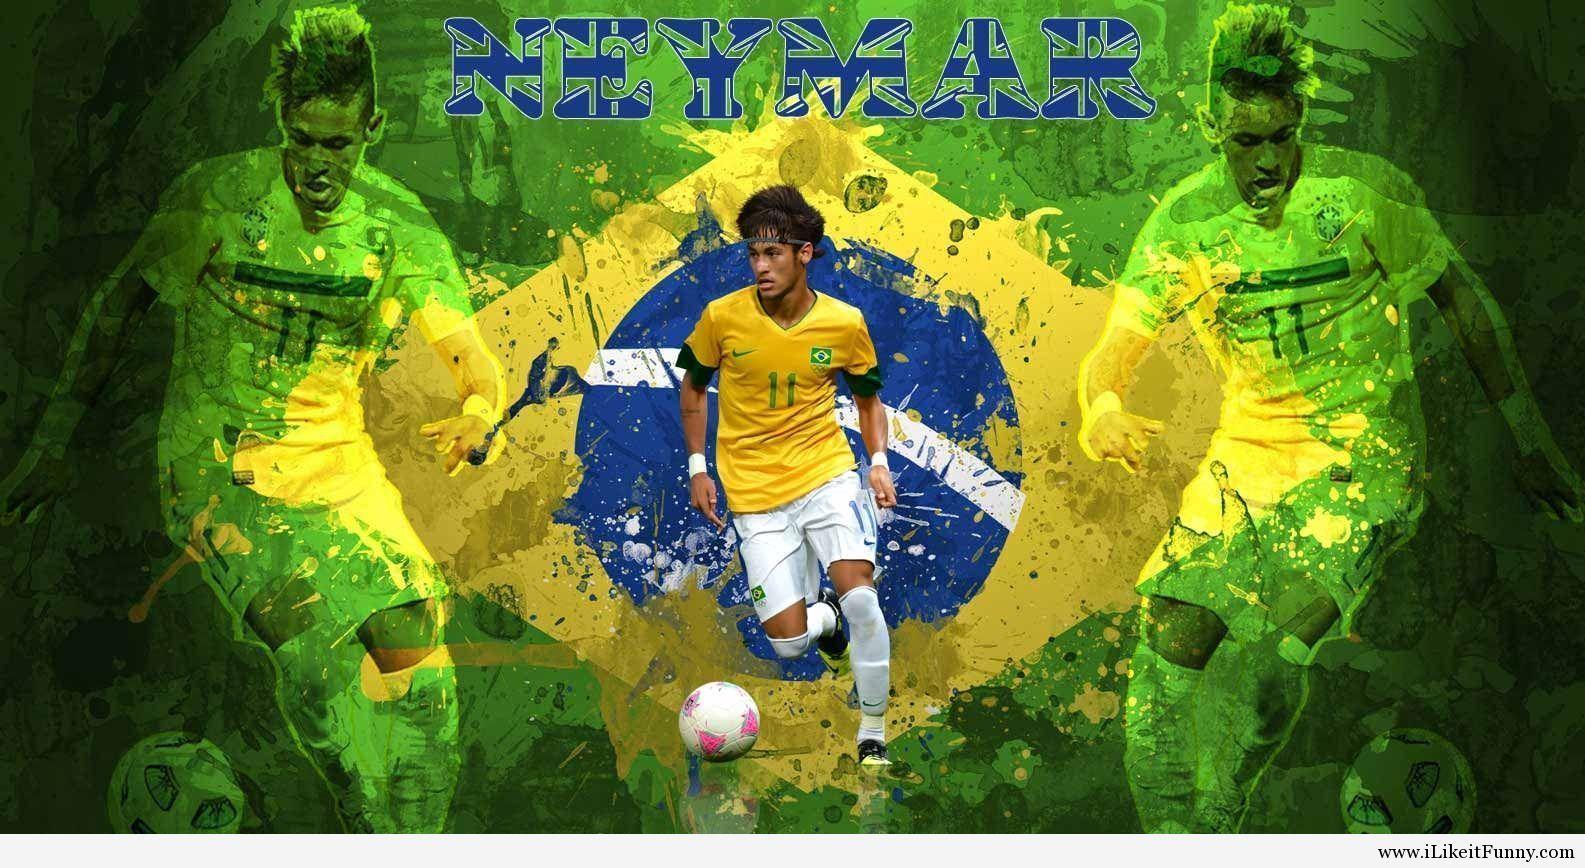 Best collection Neymar brazil 2014 wallpaper